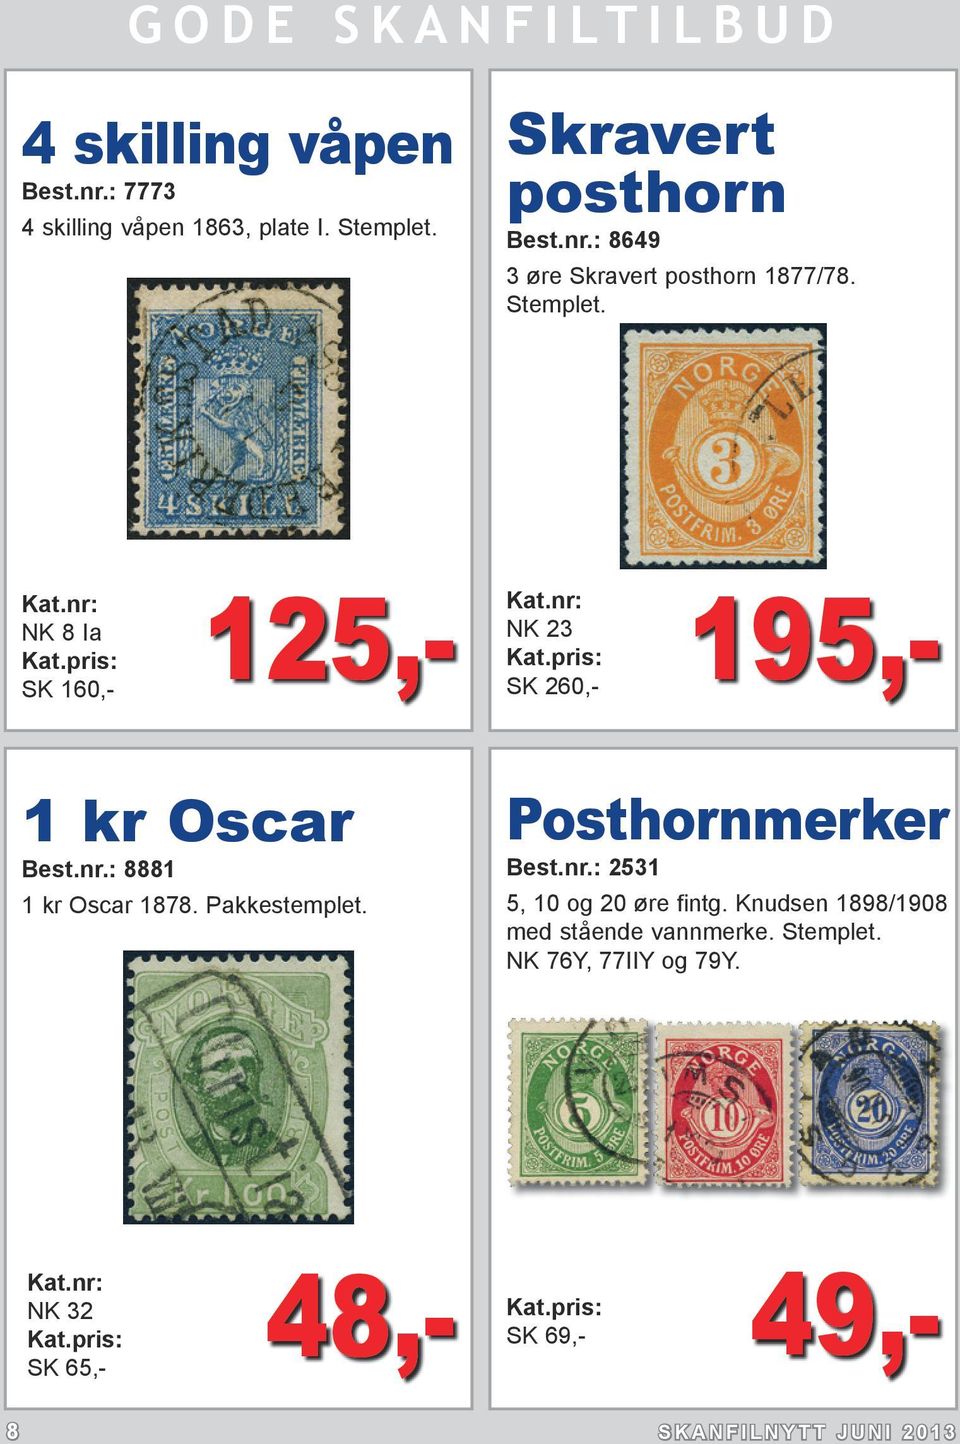 Pakkestemplet. Posthornmerker Best.nr.: 2531 5, 10 og 20 øre fintg. Knudsen 1898/1908 med stående vannmerke.